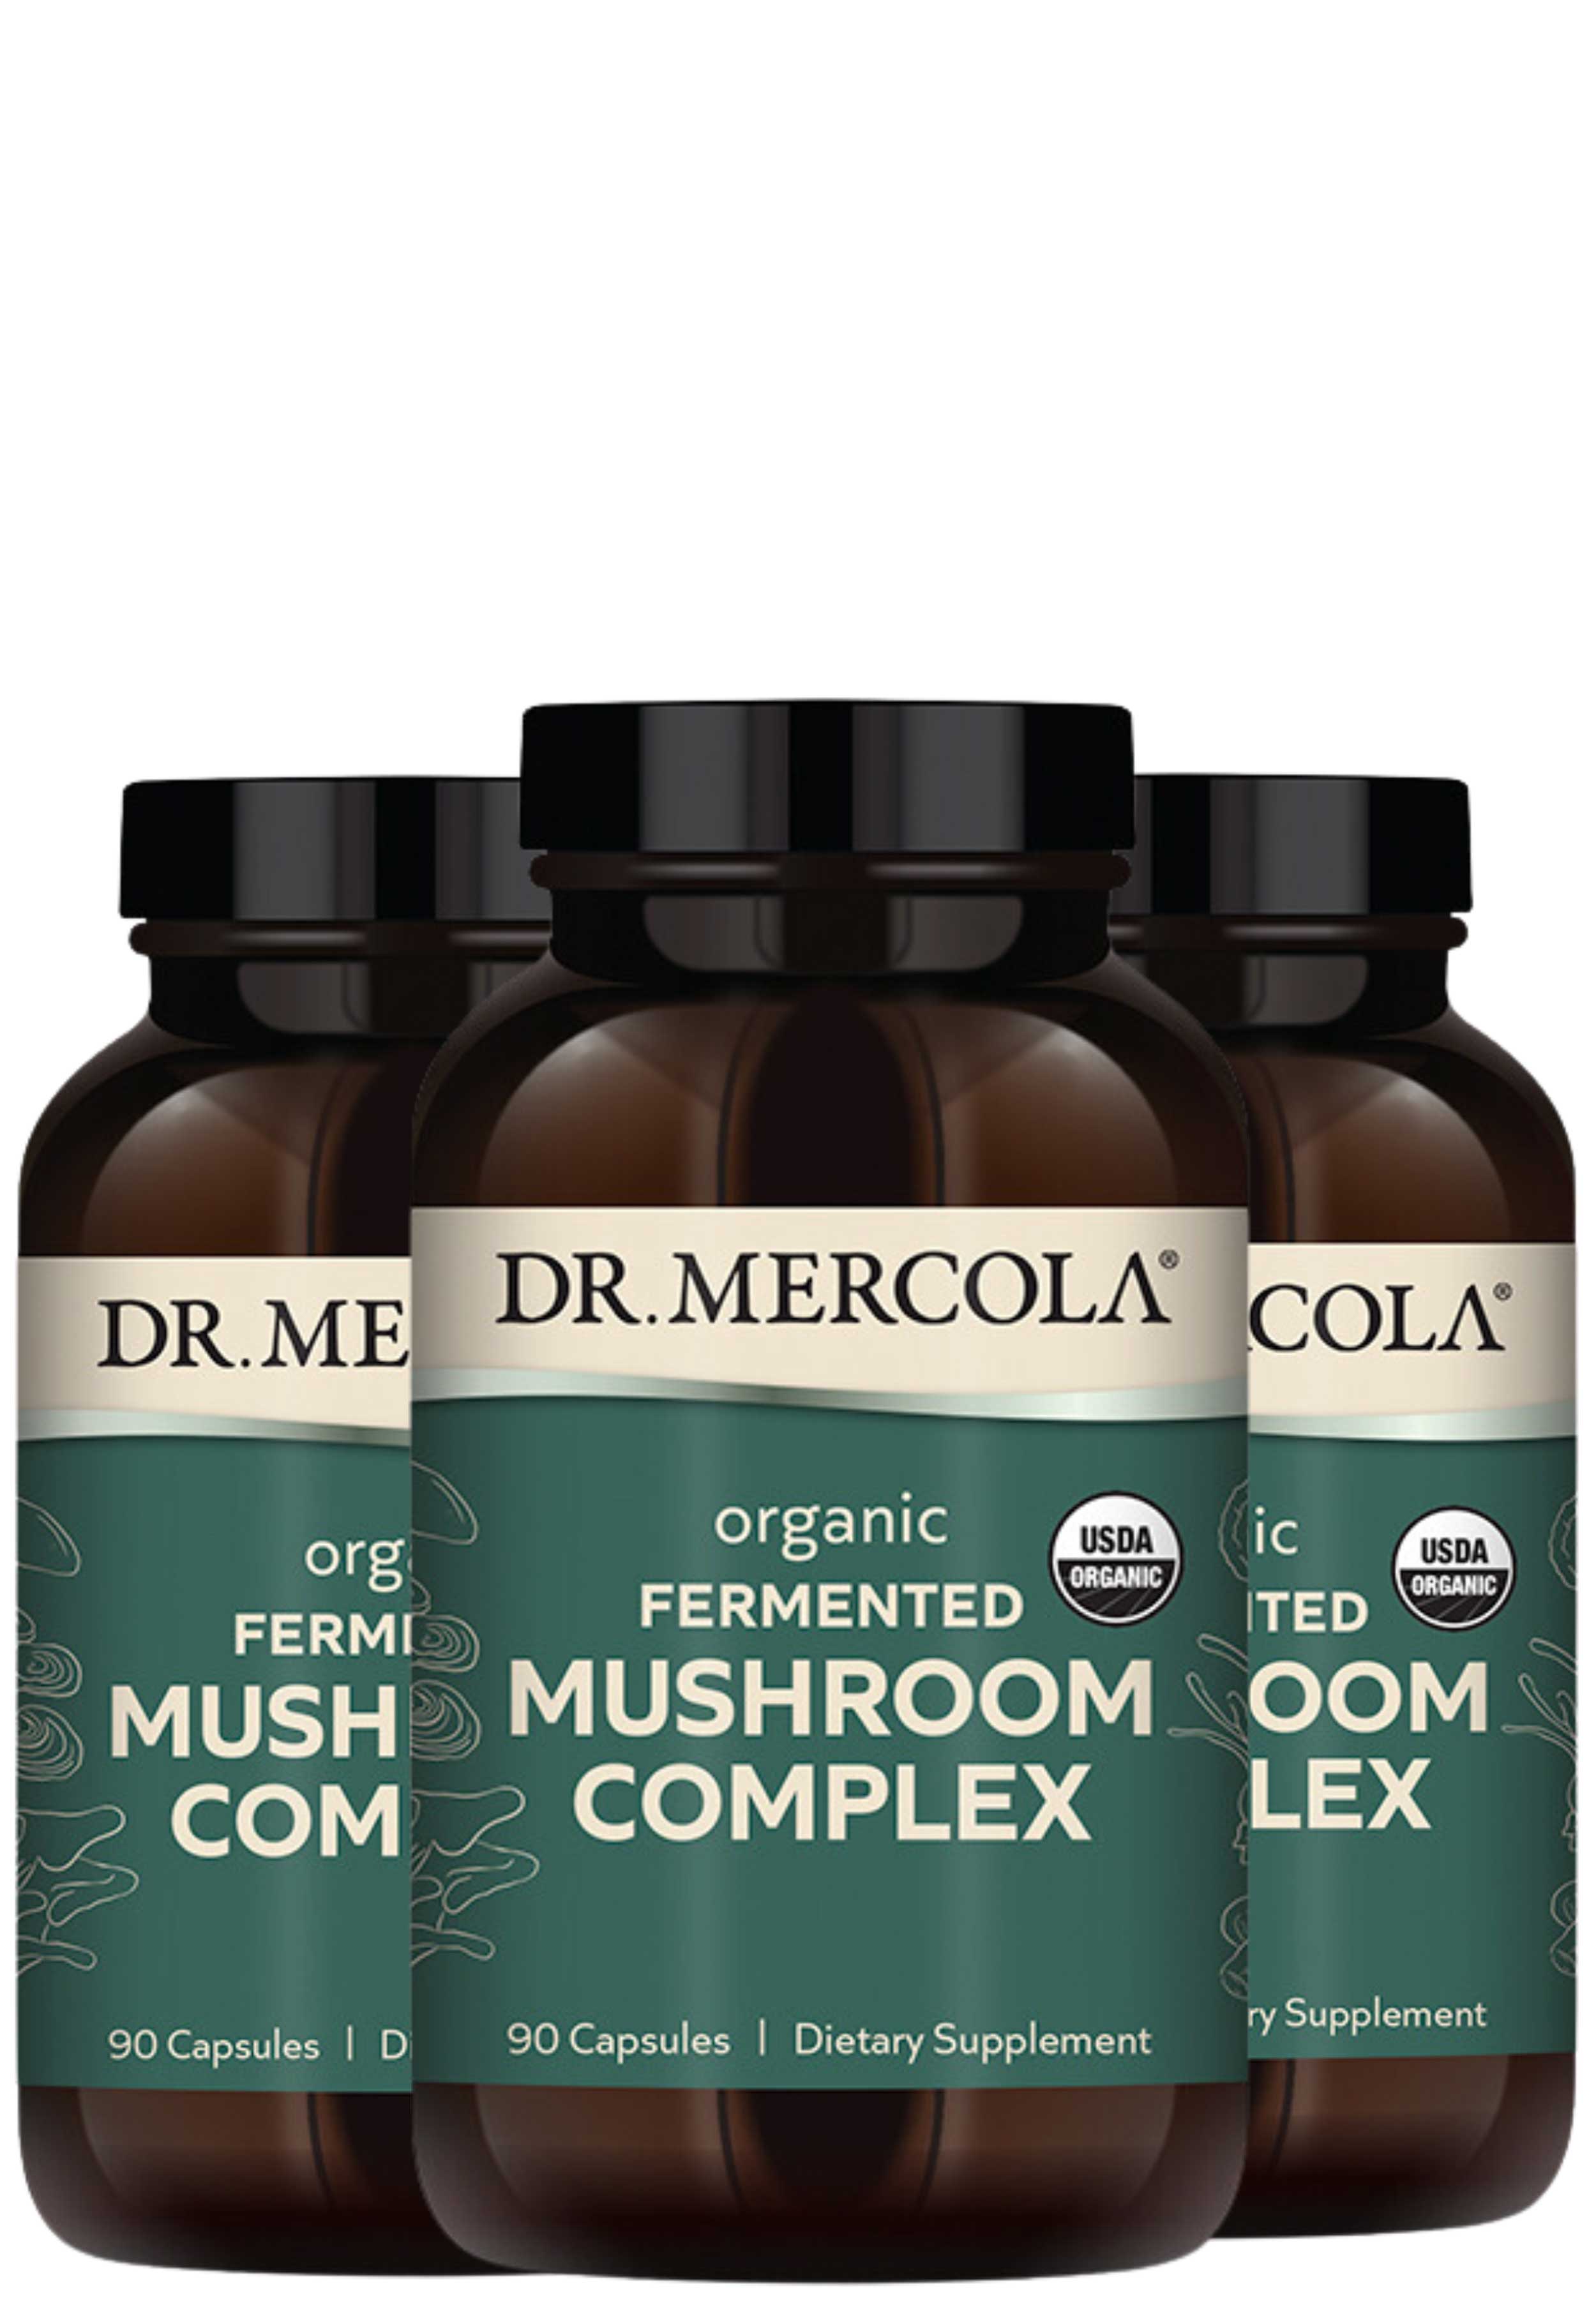 Dr. Mercola Fermented Mushroom Complex